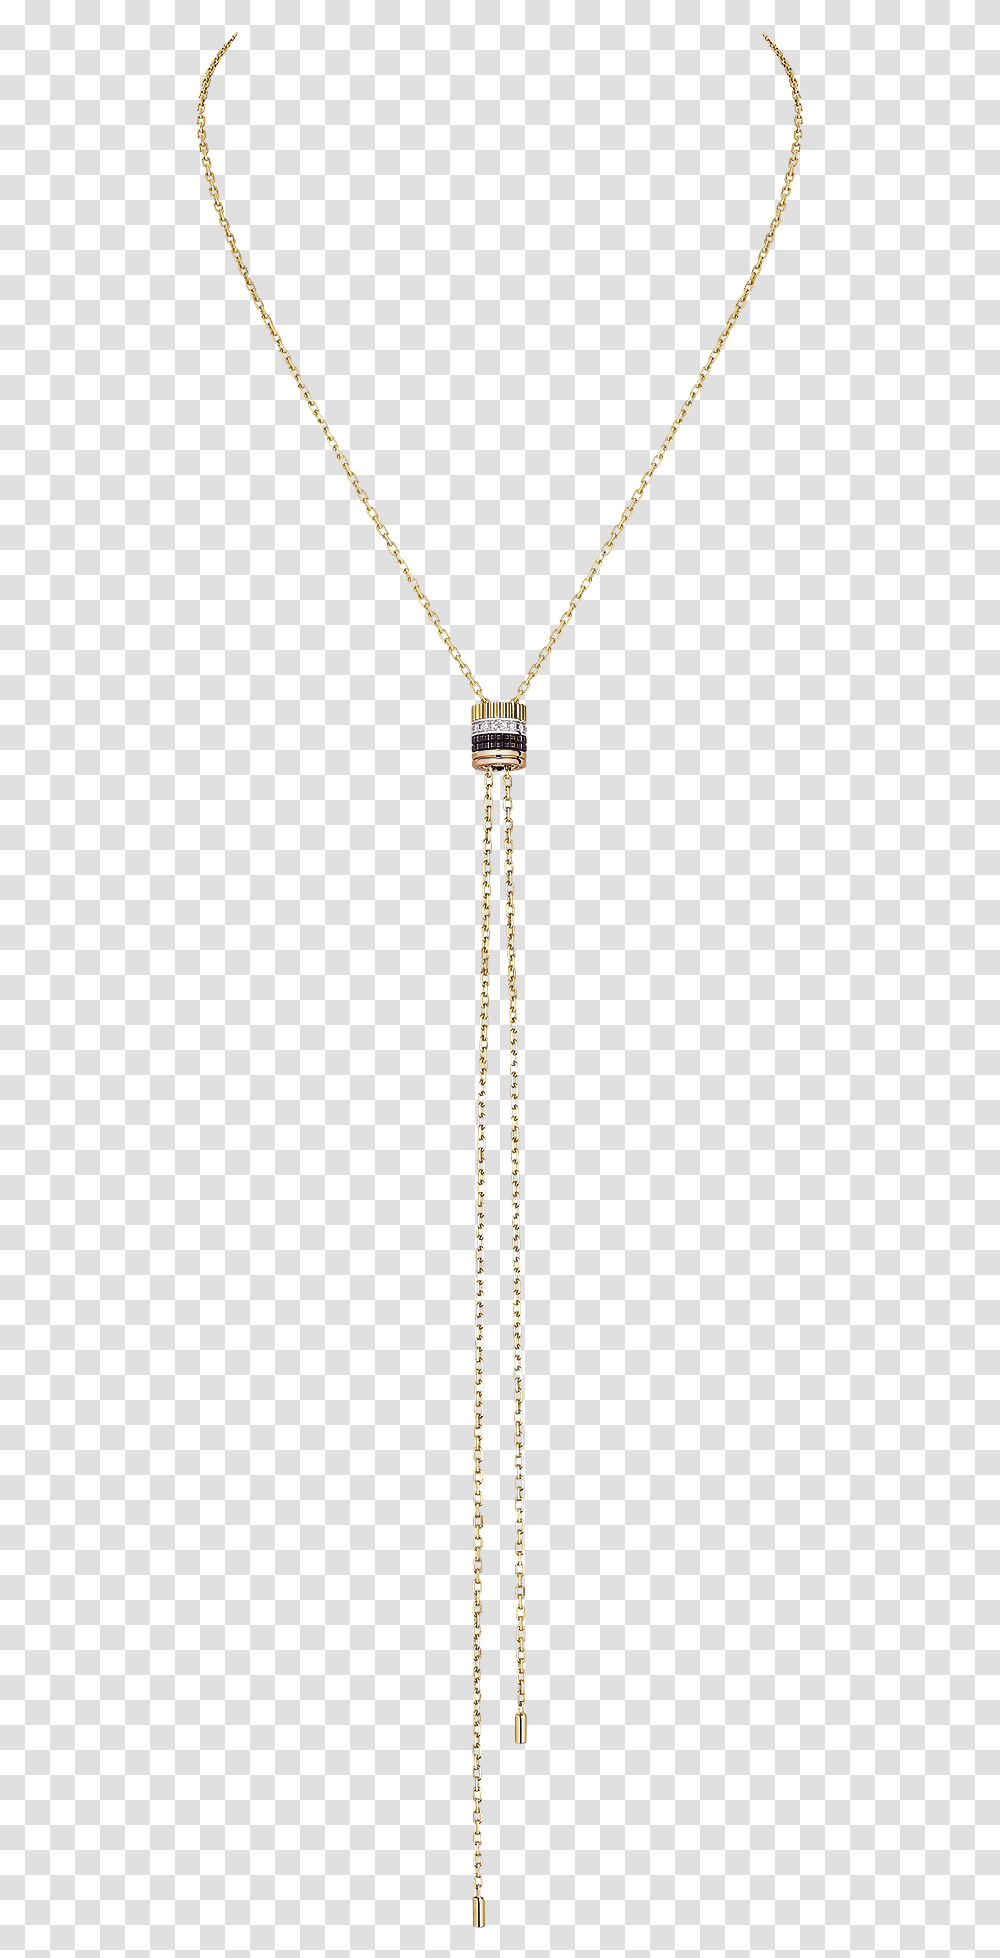 Large Quatre Classique Tie Necklace Paved With Diamonds Pendant, Lamp Post Transparent Png